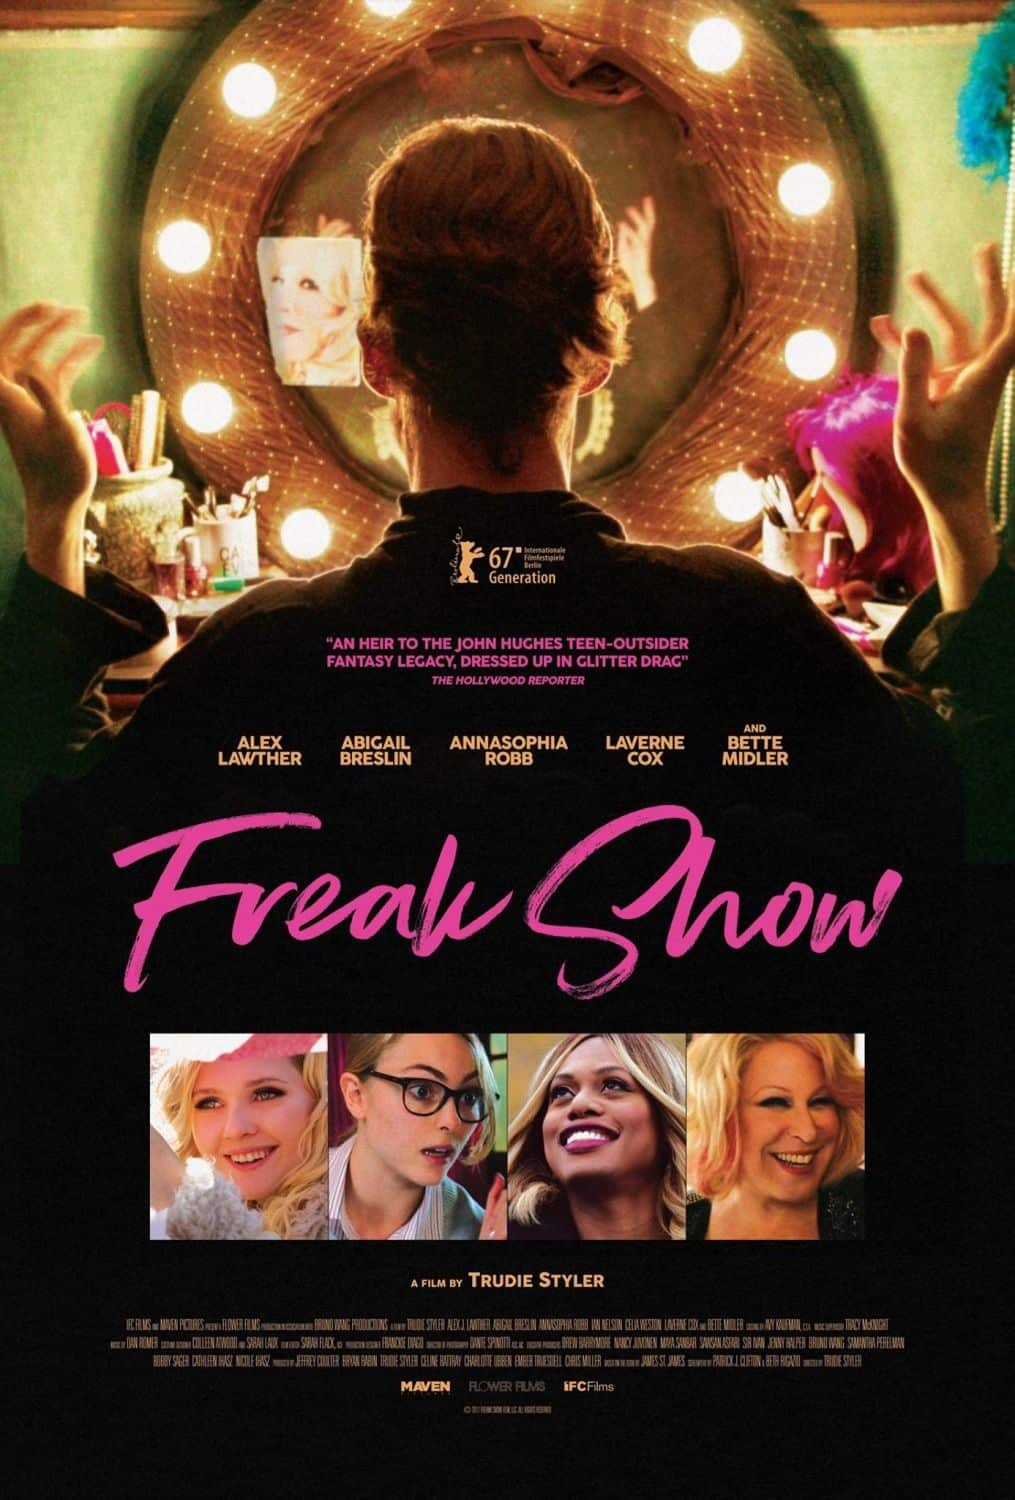 El arte promocional de The Freak Show muestra al elenco debajo del título, con Alex Lawther como Billy Bloom sentado en una silla.